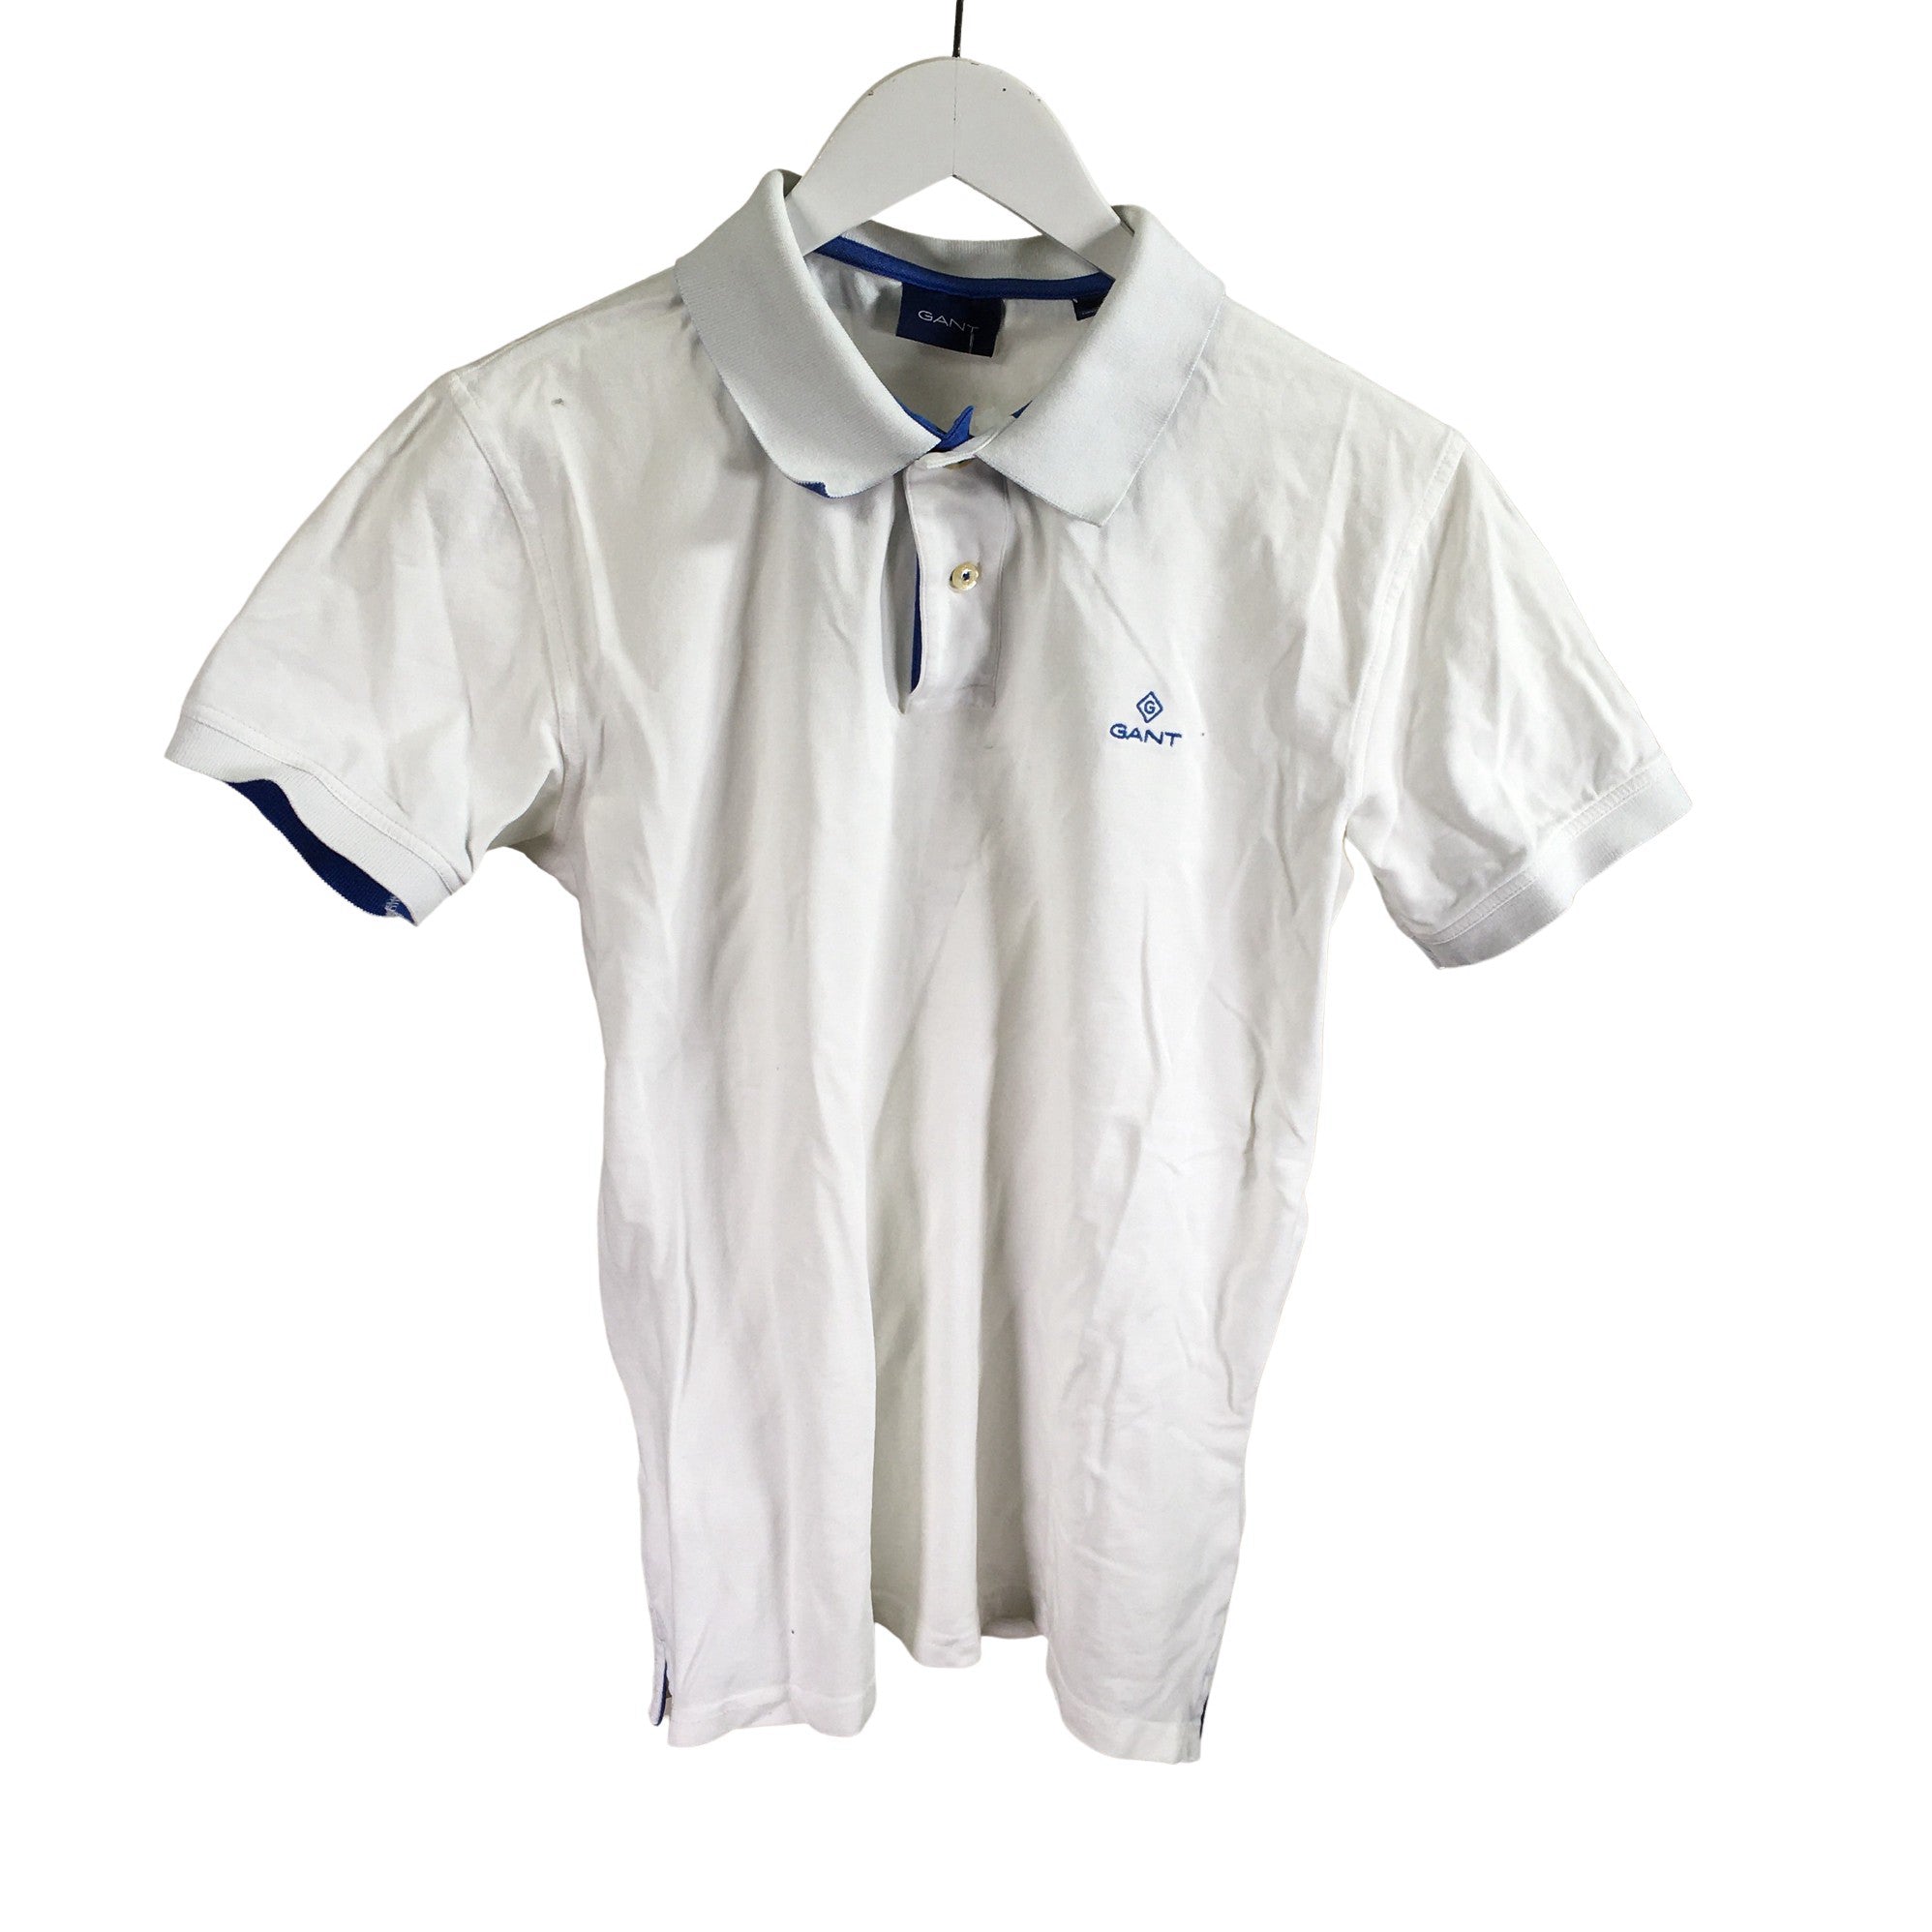 Men's Gant Polo size M (White) |